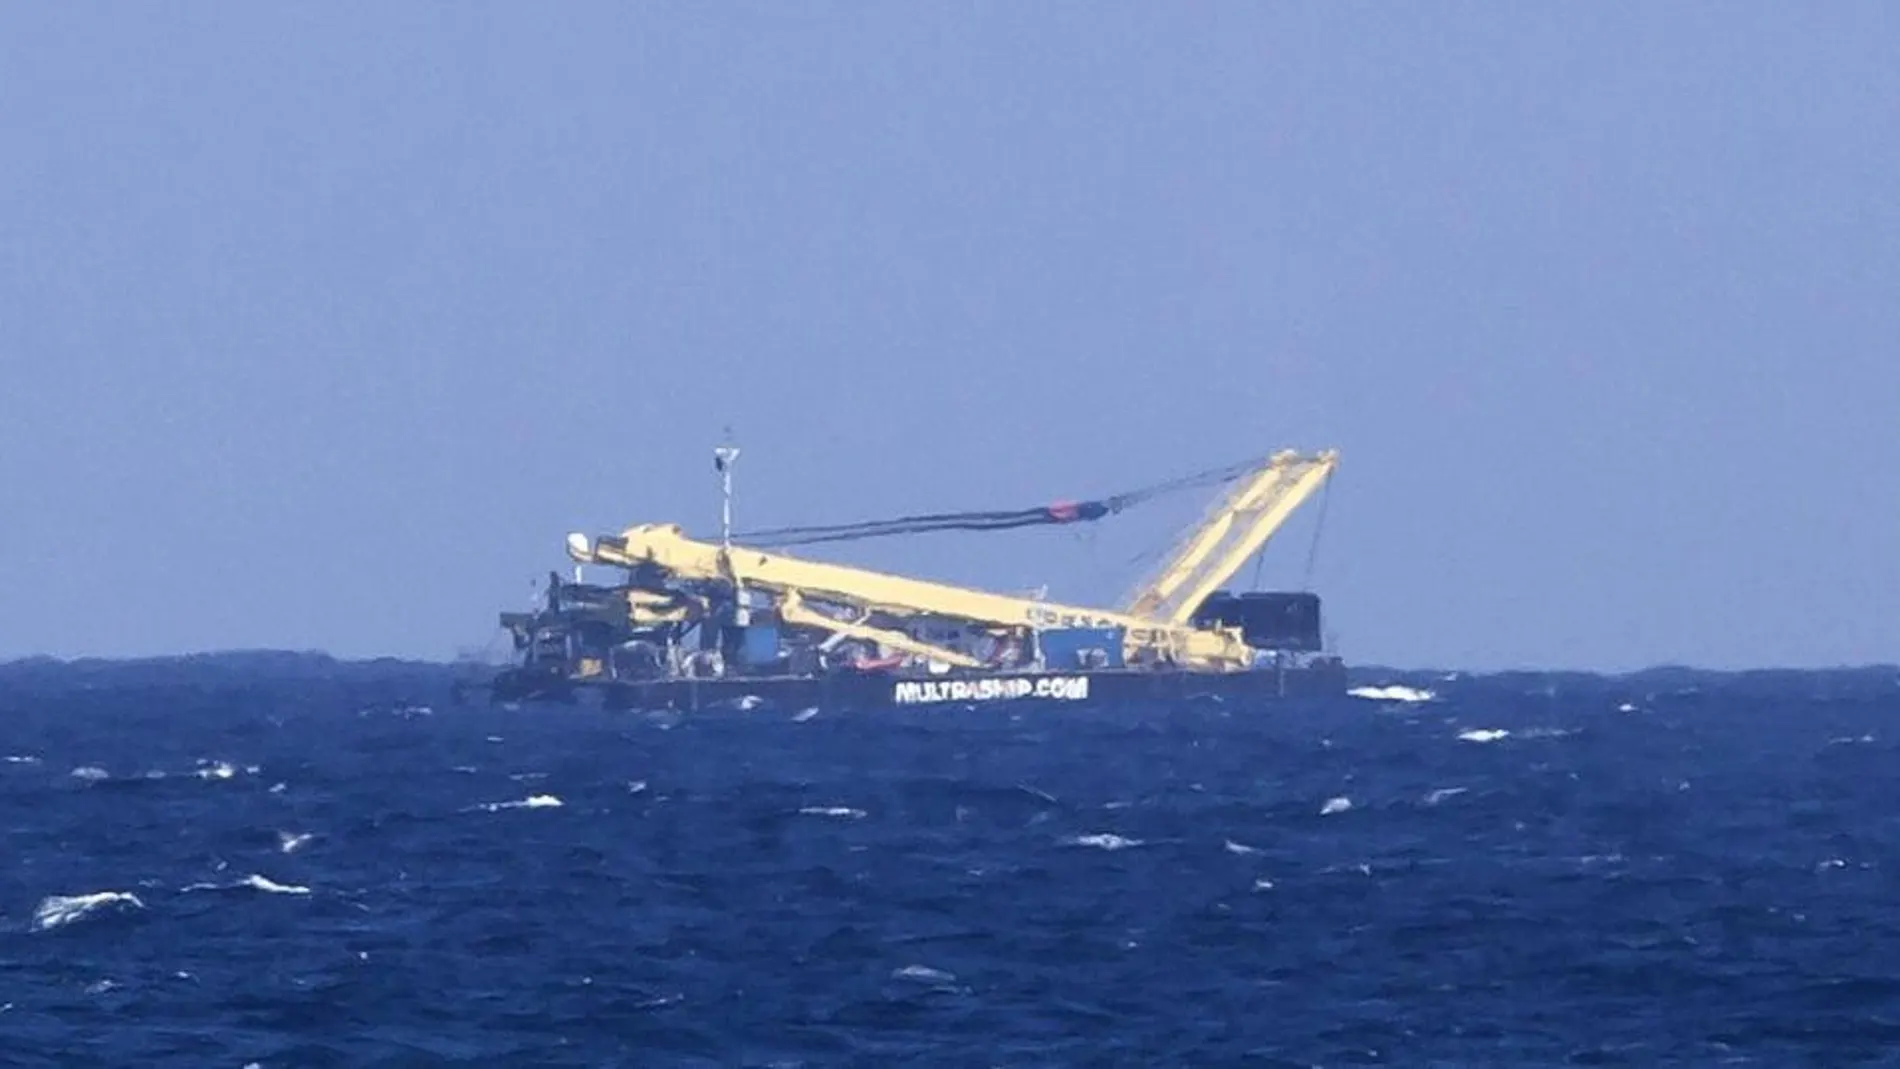 Vista del barco remolcador situado en la zona costera de La Garita, Telde, que ha sido confundido con un avión accidentado